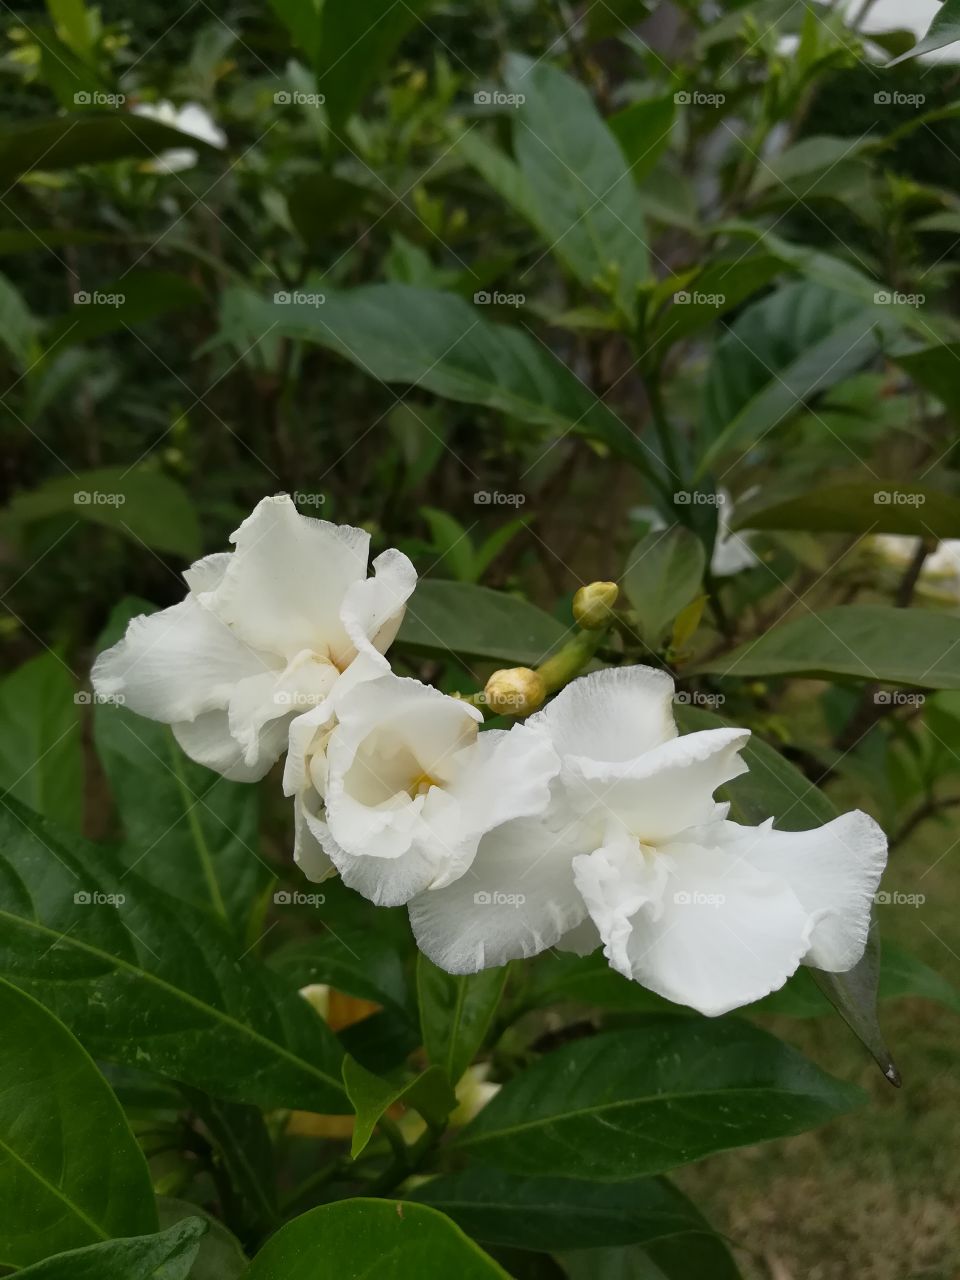 White three Jusminoides flower among green leaves in garden